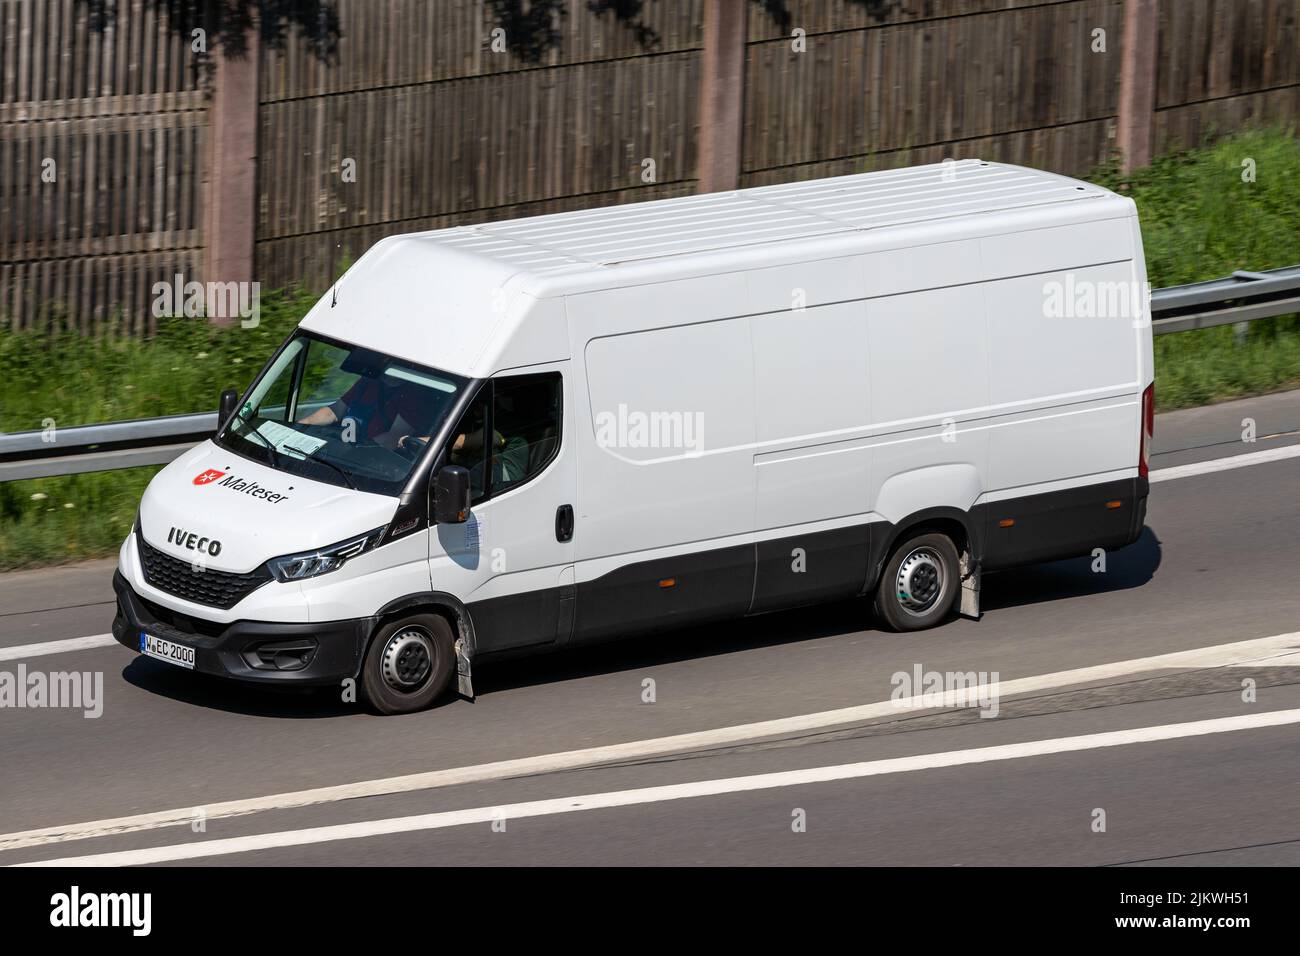 Malteser Iveco furgoneta diaria en autopista Foto de stock